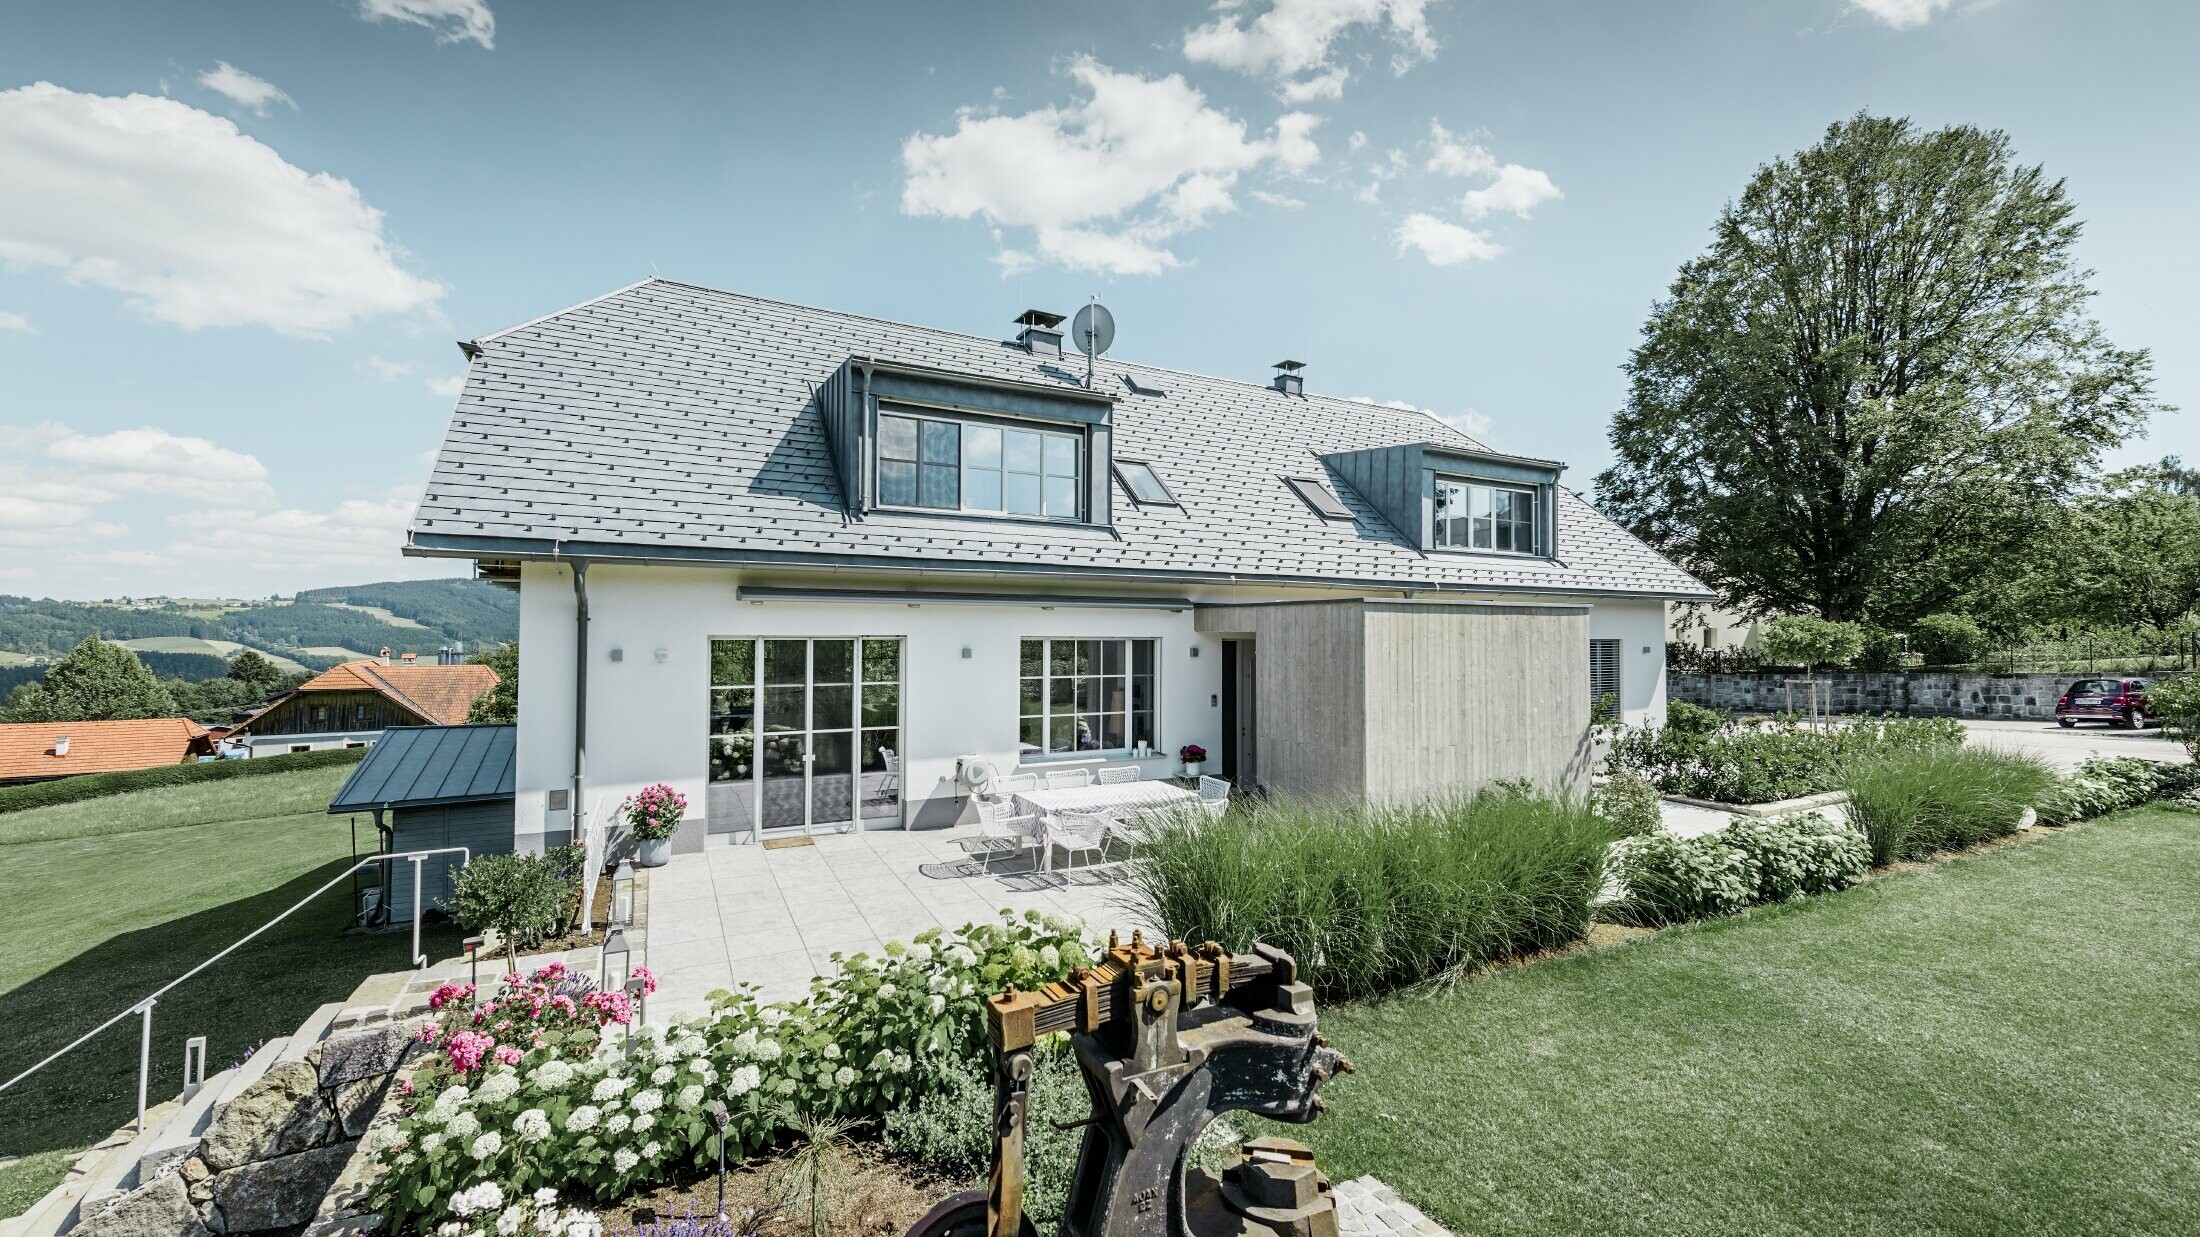 Maison individuelle classique avec toit en demi-croupe ; maison avec toit rénové à l'aide de bardeaux PREFA couleur gris pierre, avec beau jardin et grande terrasse.